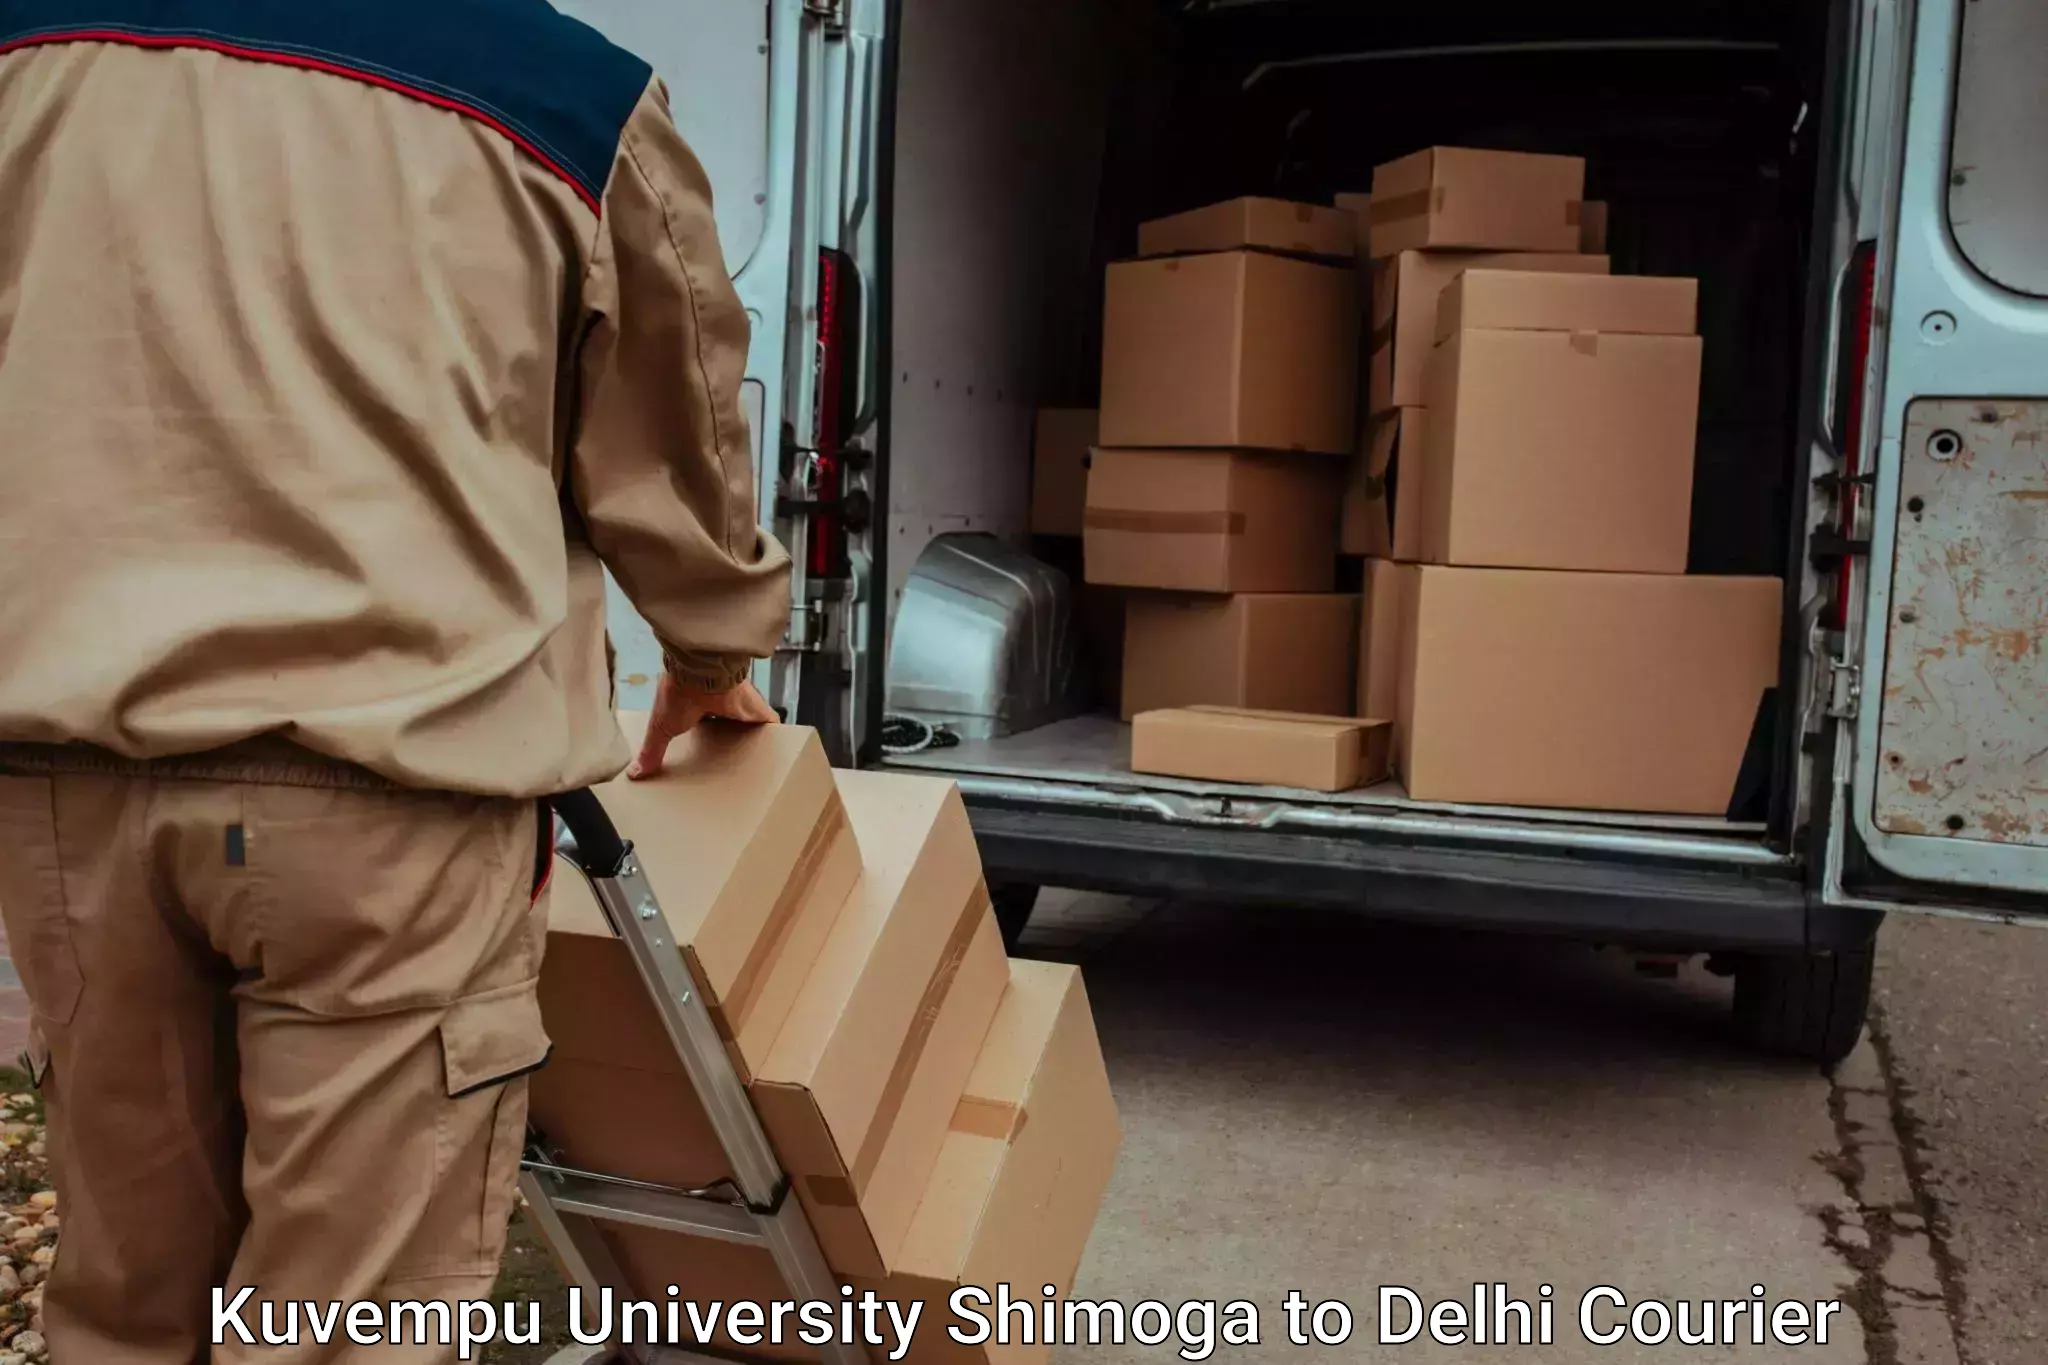 Baggage shipping service Kuvempu University Shimoga to Lodhi Road